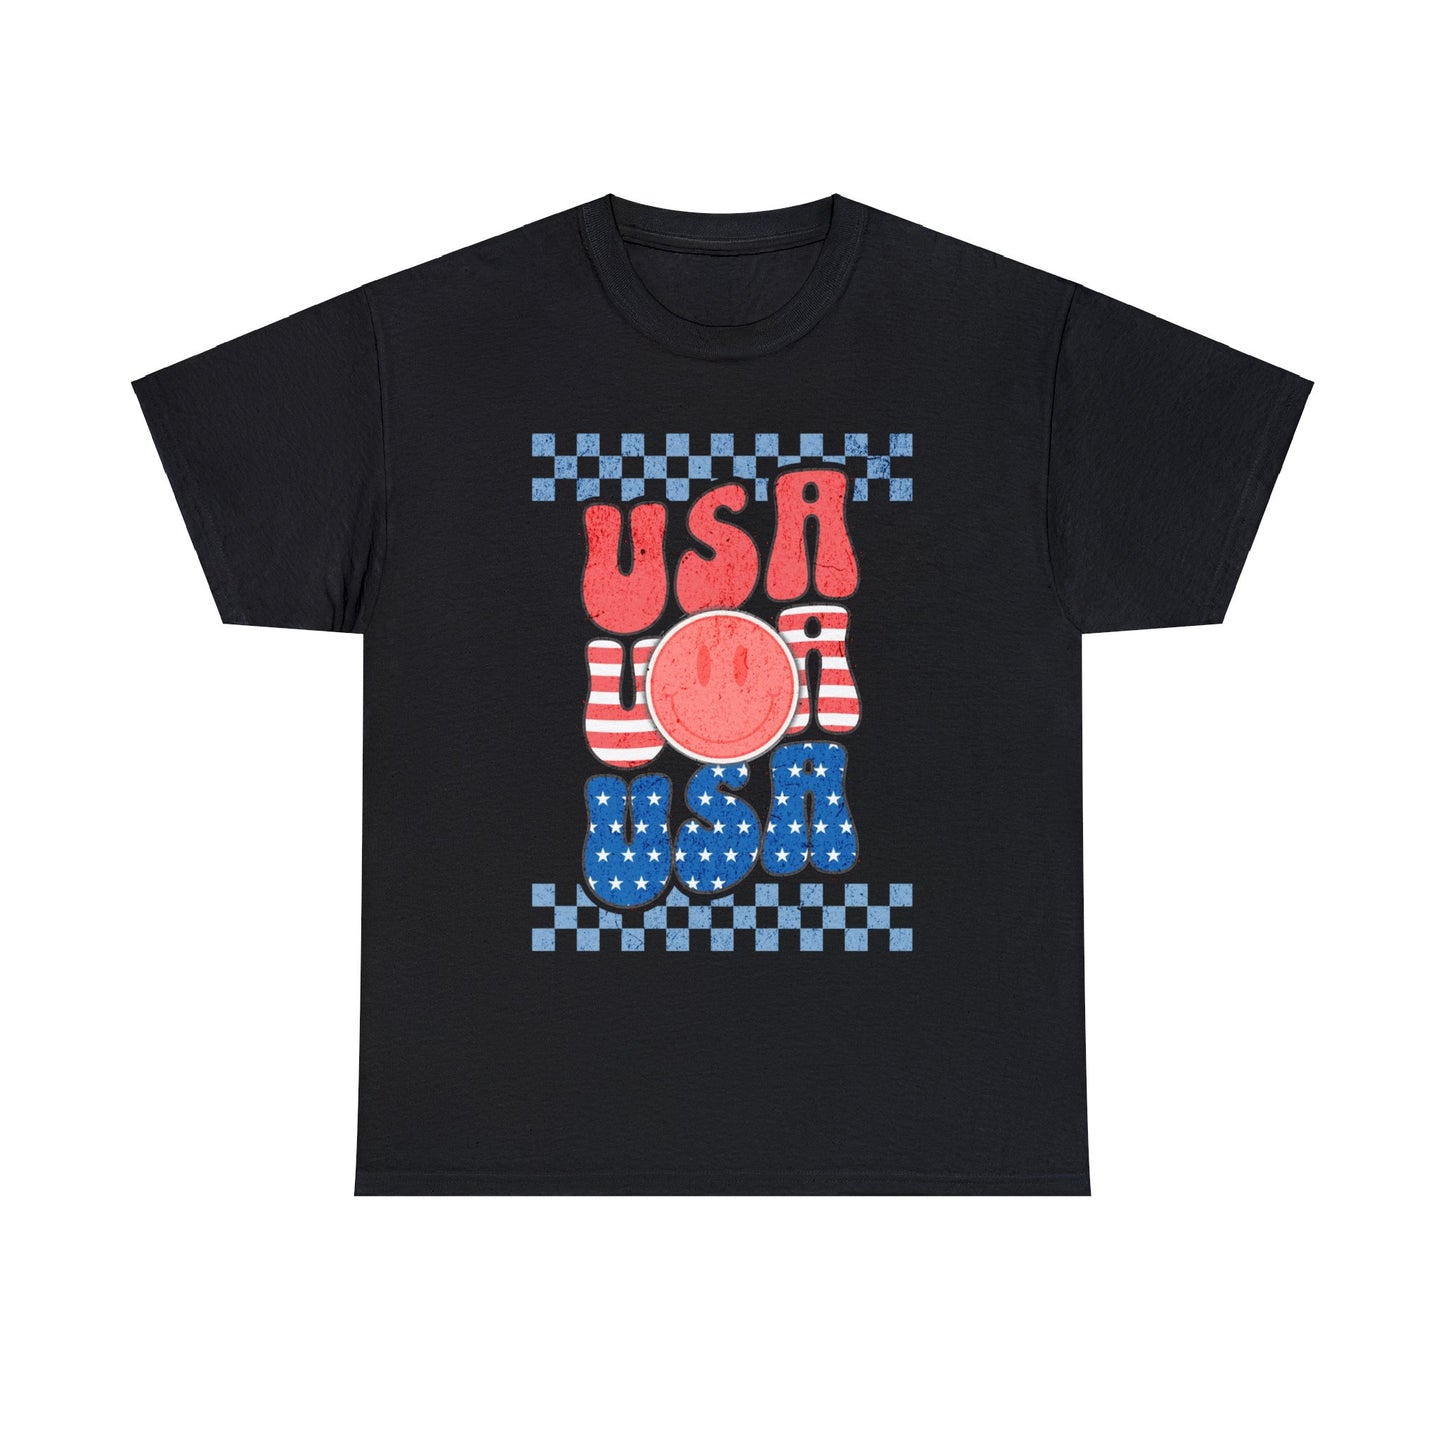 USA USA USA - Unisex T-Shirt